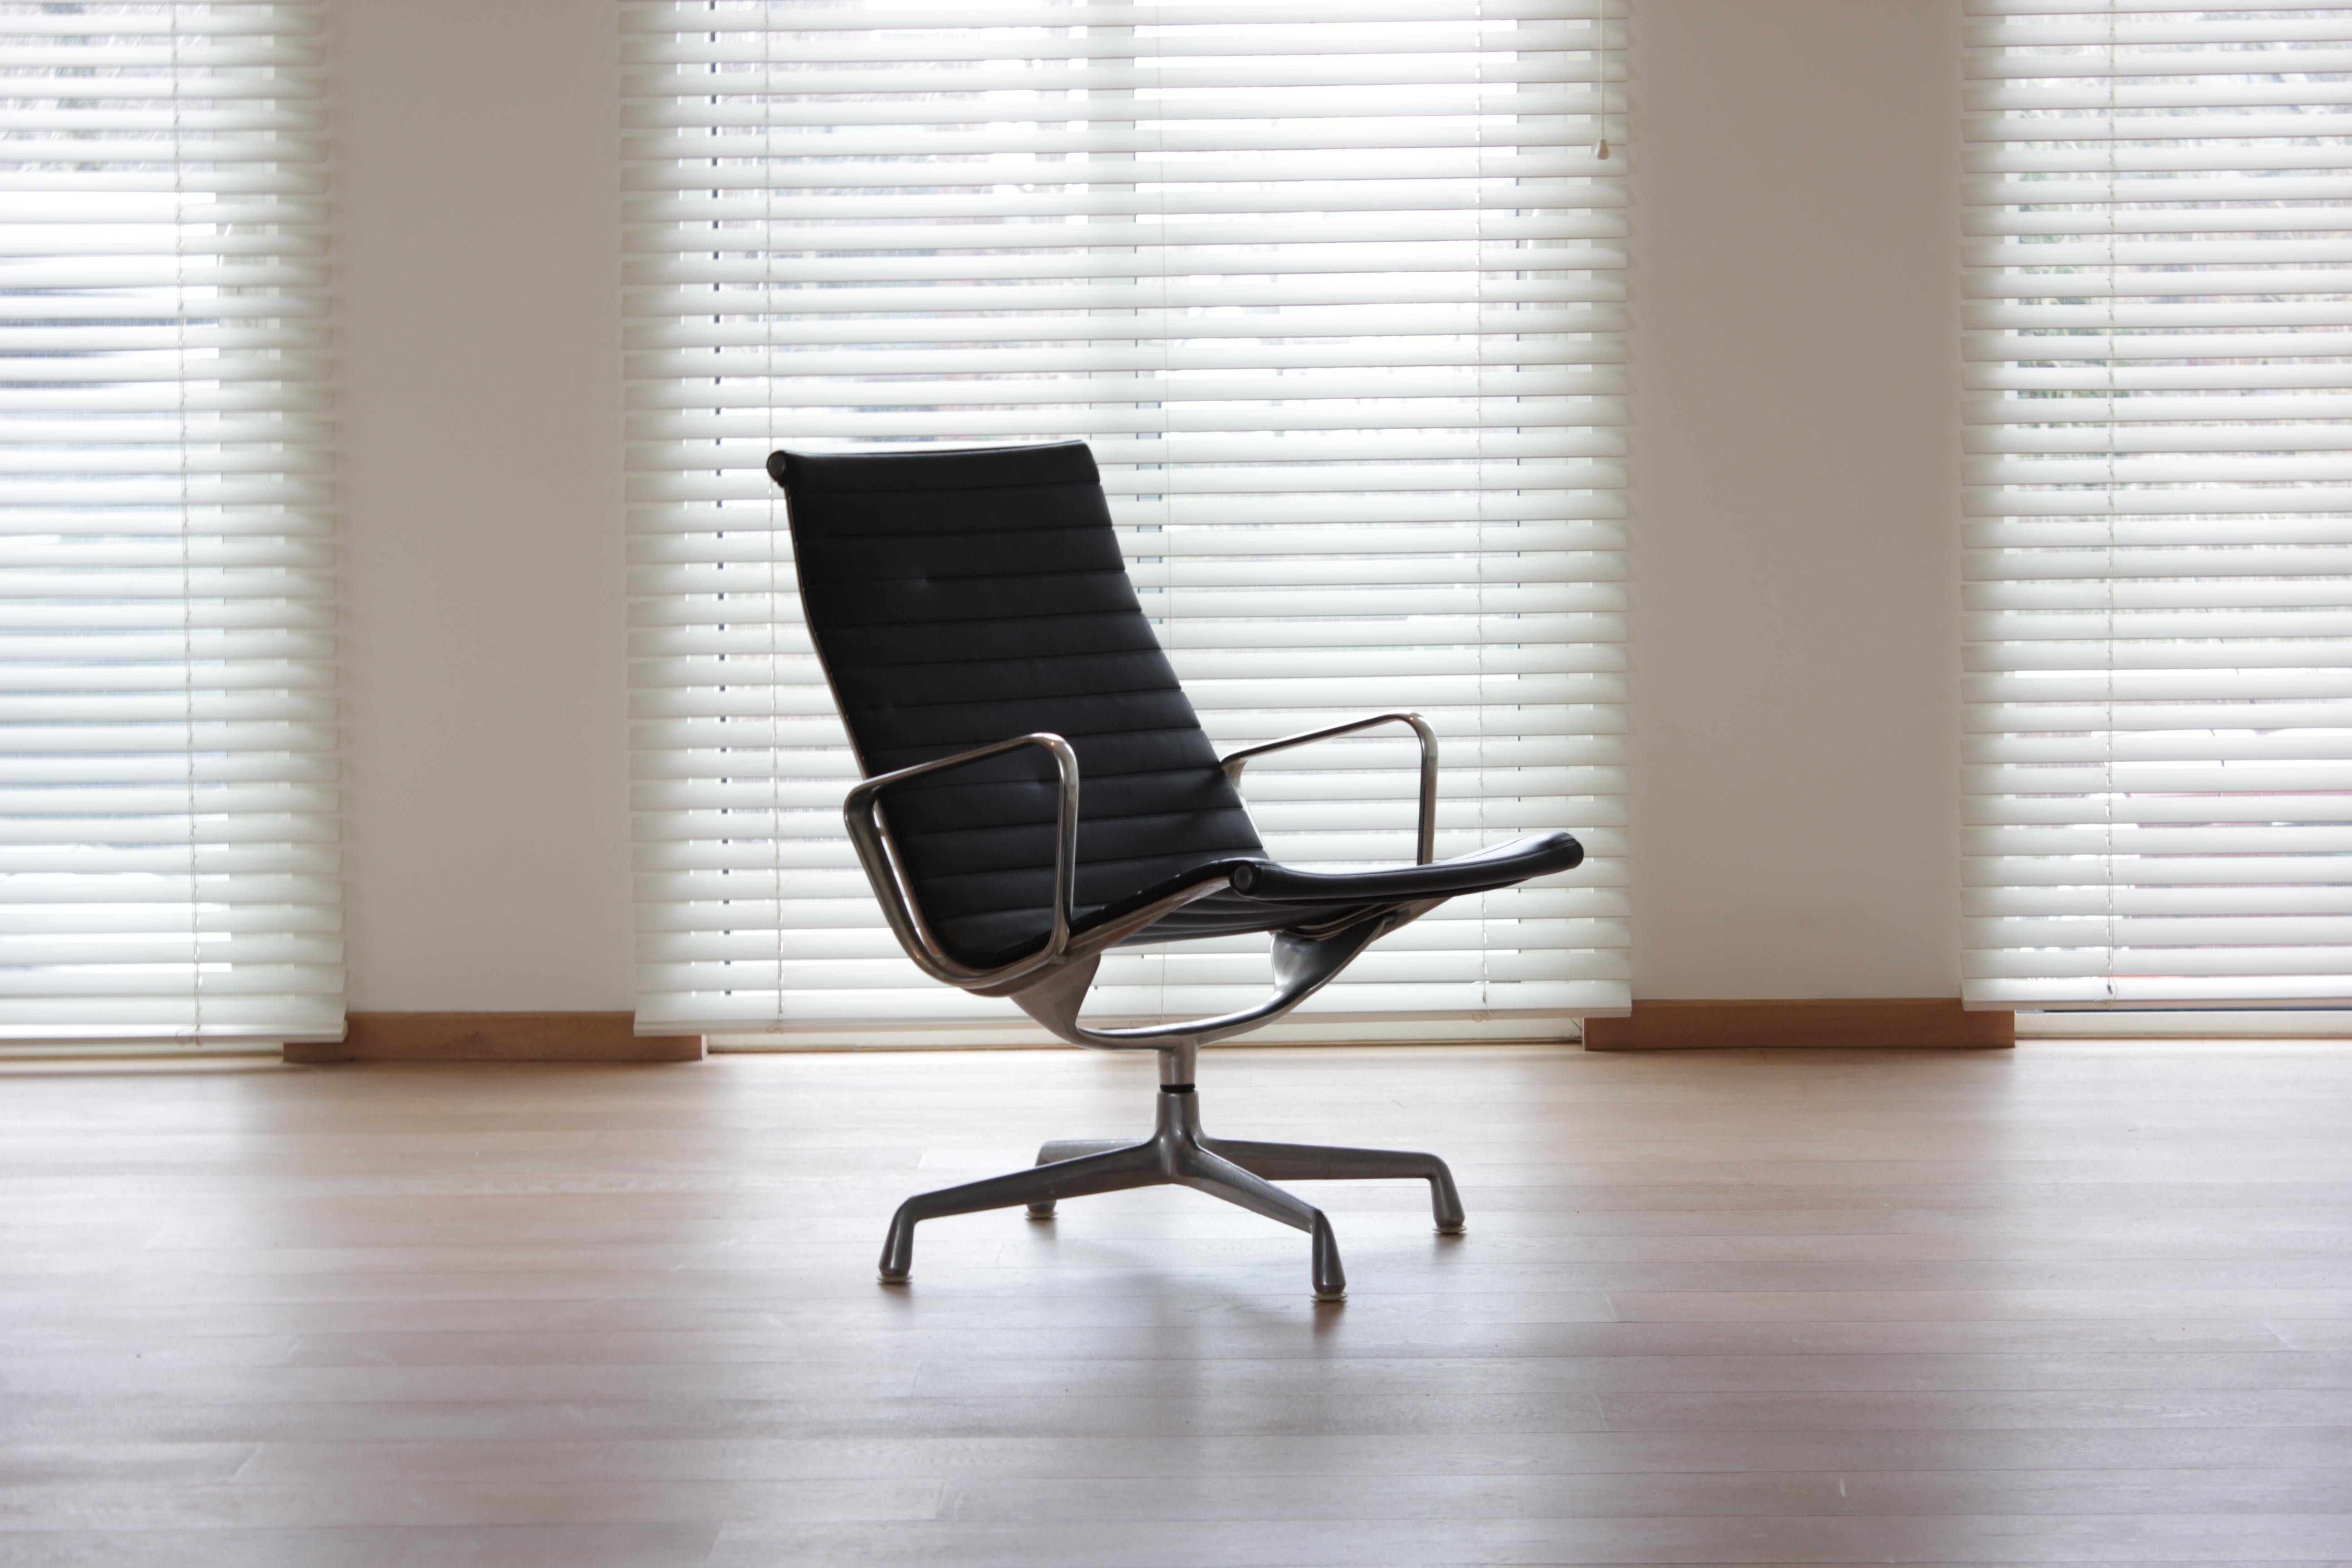 Voici la chaise EA116, une incarnation exquise du design moderne du milieu du siècle, conçue en 1958 dans le cadre du légendaire Eames Aluminum Group. Cet exemplaire particulier, une création distinguée des années 1966 à 1973, capture l'essence de